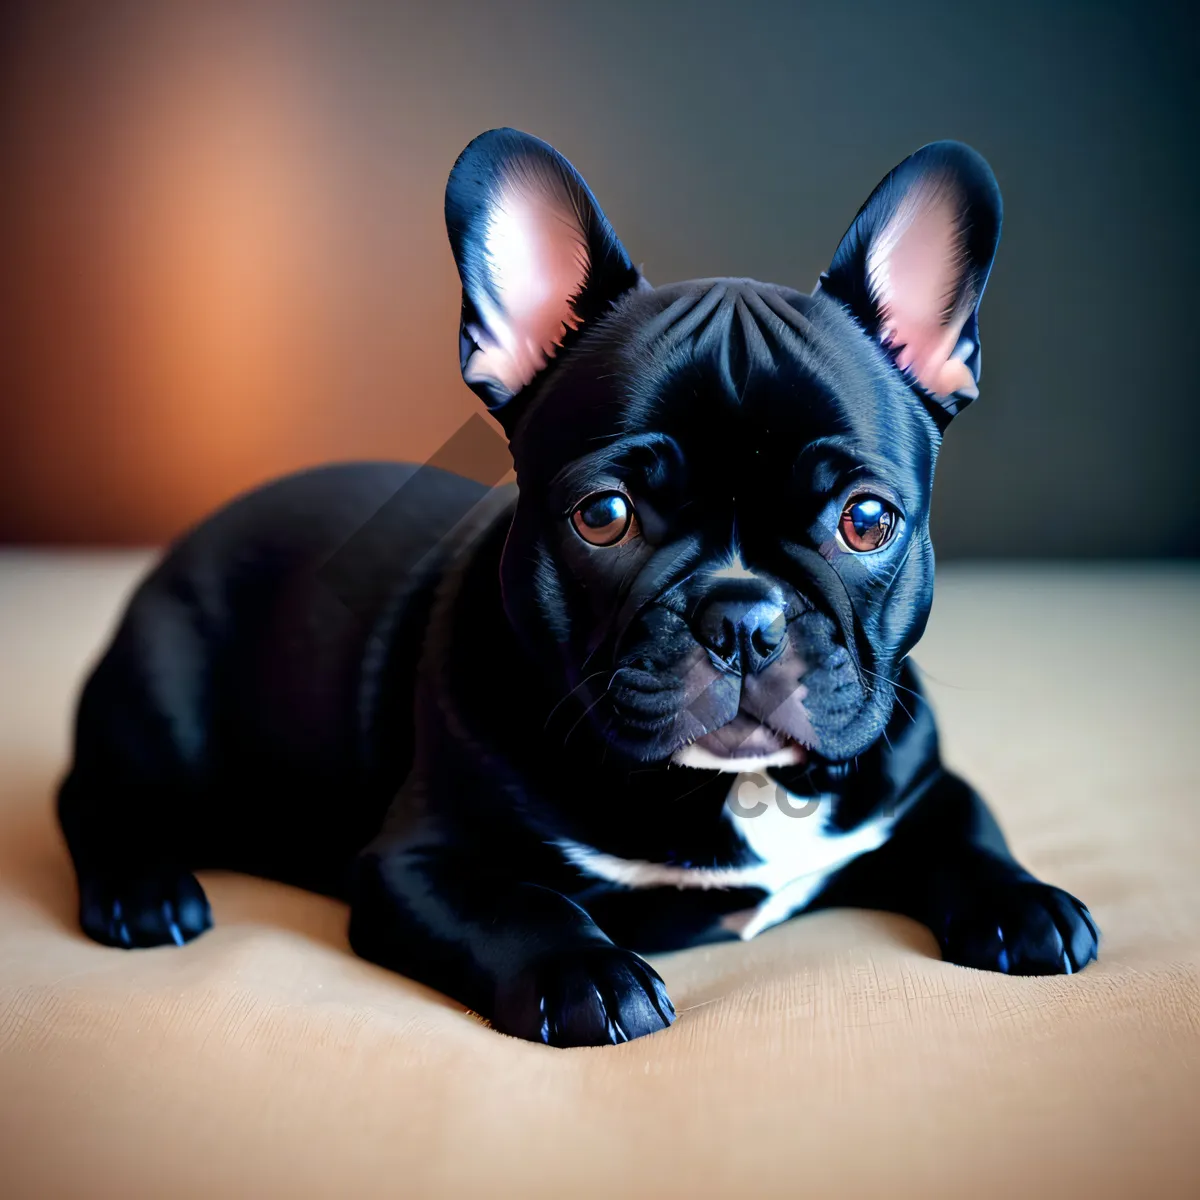 Picture of Cute Bulldog Portrait in Studio Setting